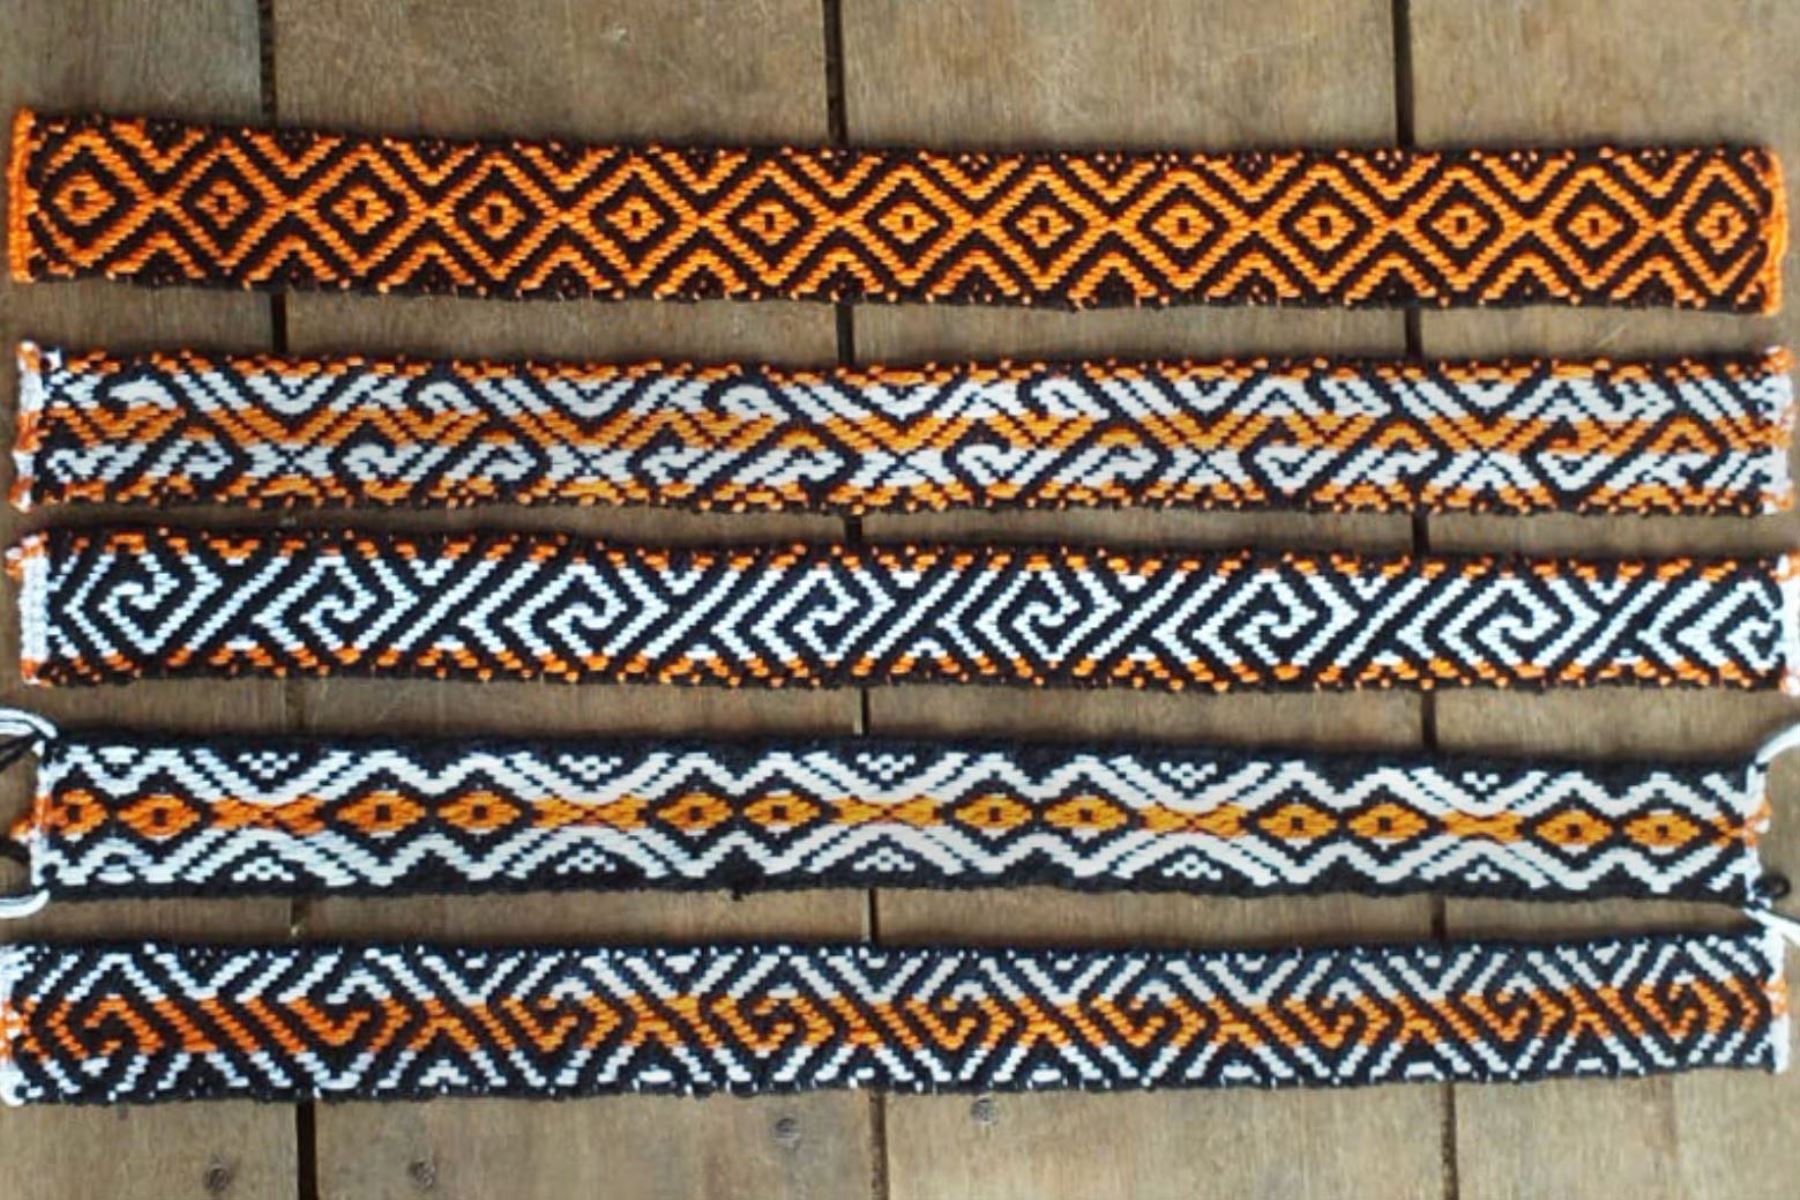 En el tejido, las mujeres del pueblo Huni Kuin plasman ancestrales y complejos diseños geométricos denominados kené, que aplican en la decoración estructural de sus creaciones textiles y otros objetos.